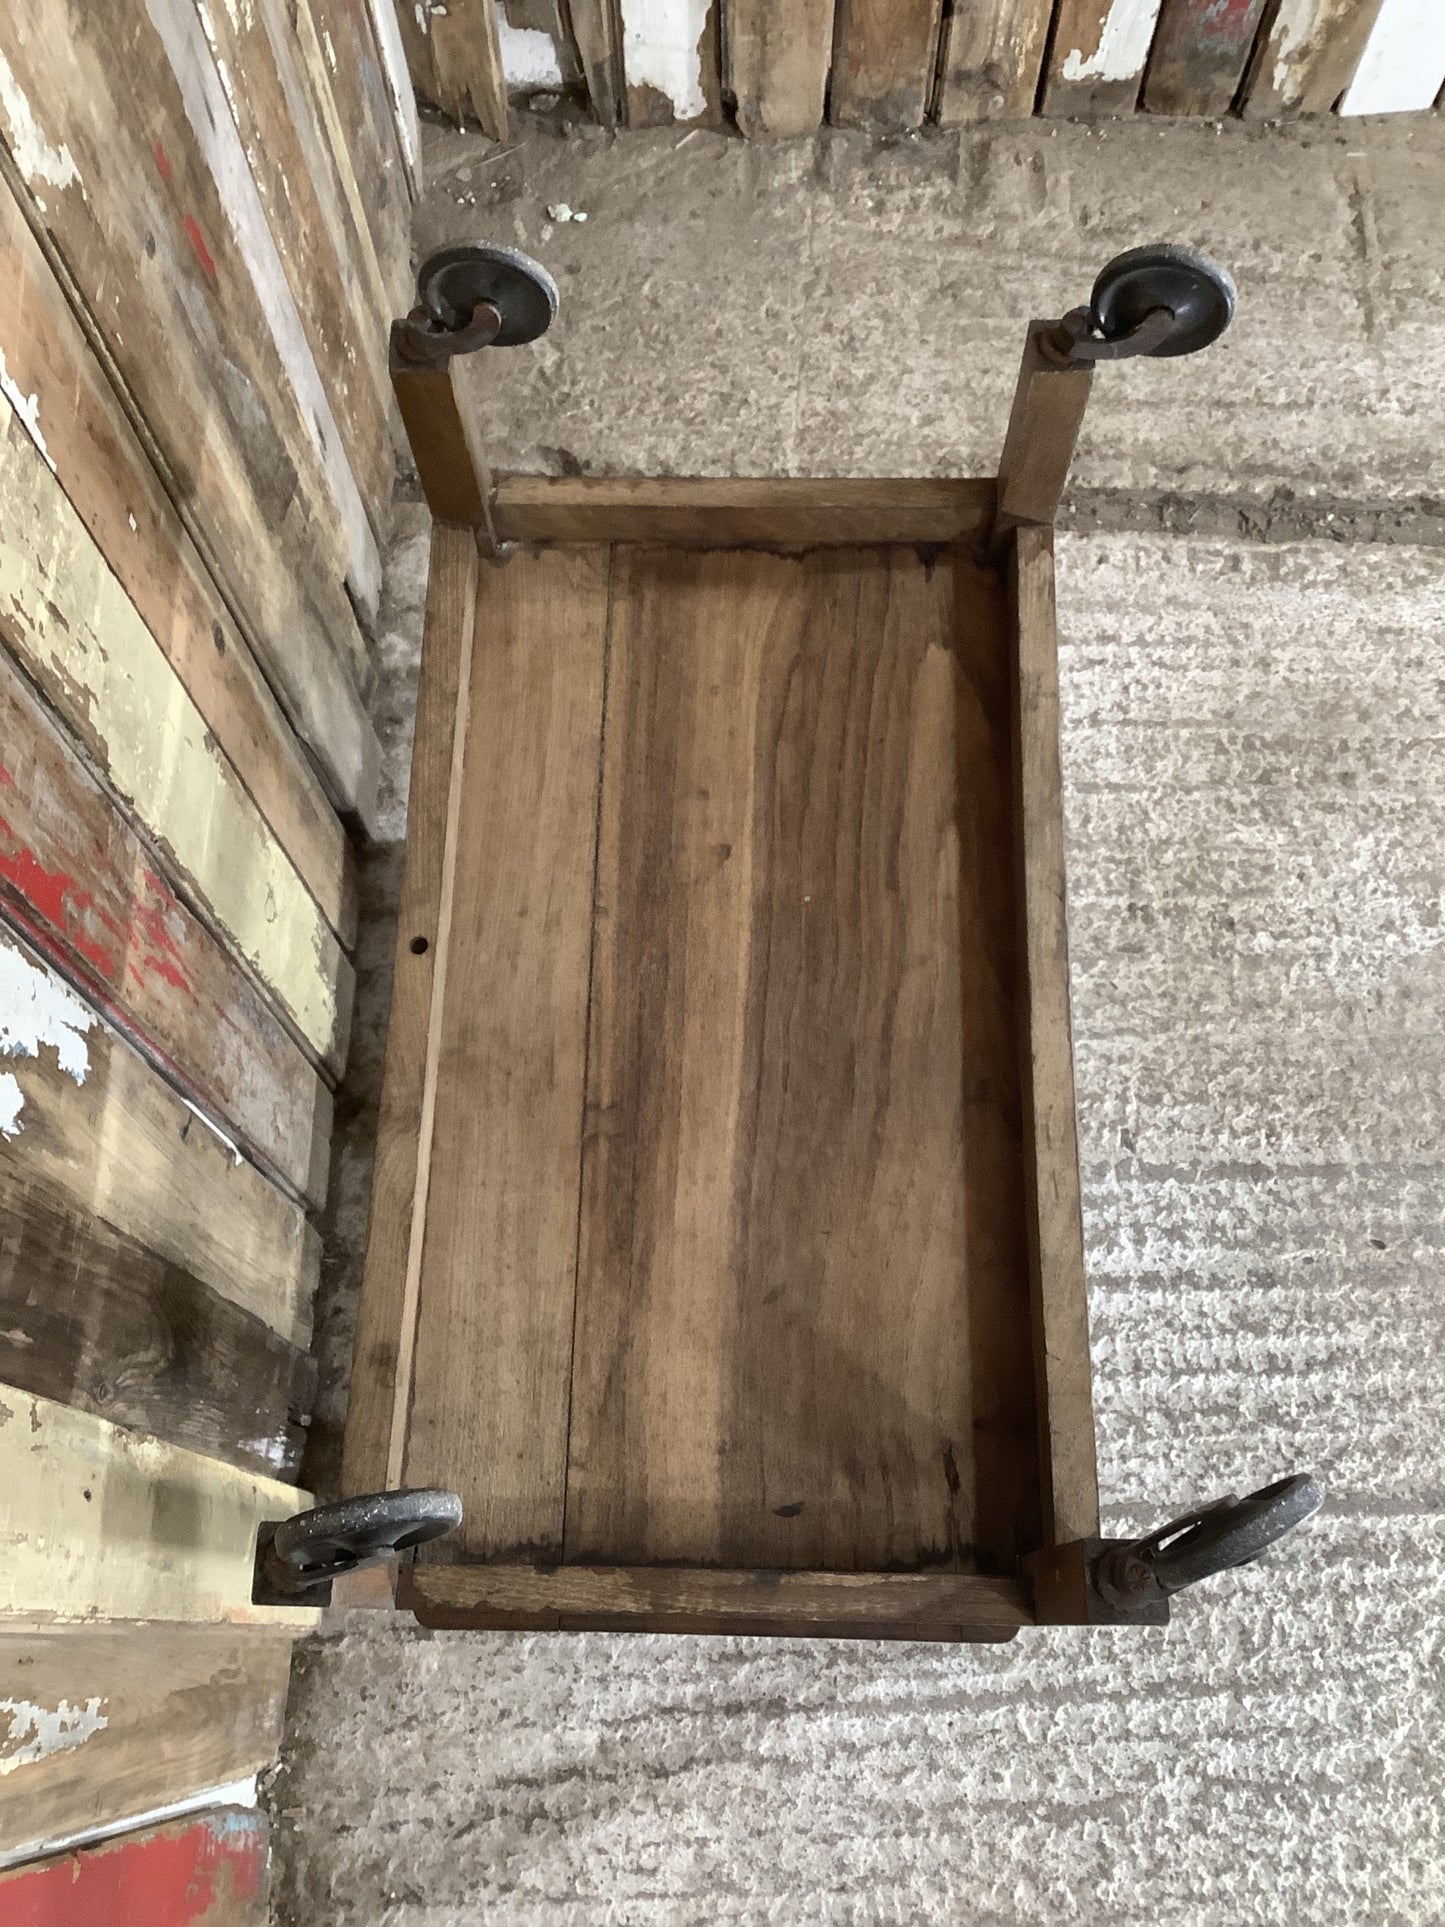 Useful Oak 2’4” Hostess Trolly Side Table 1930’s Style